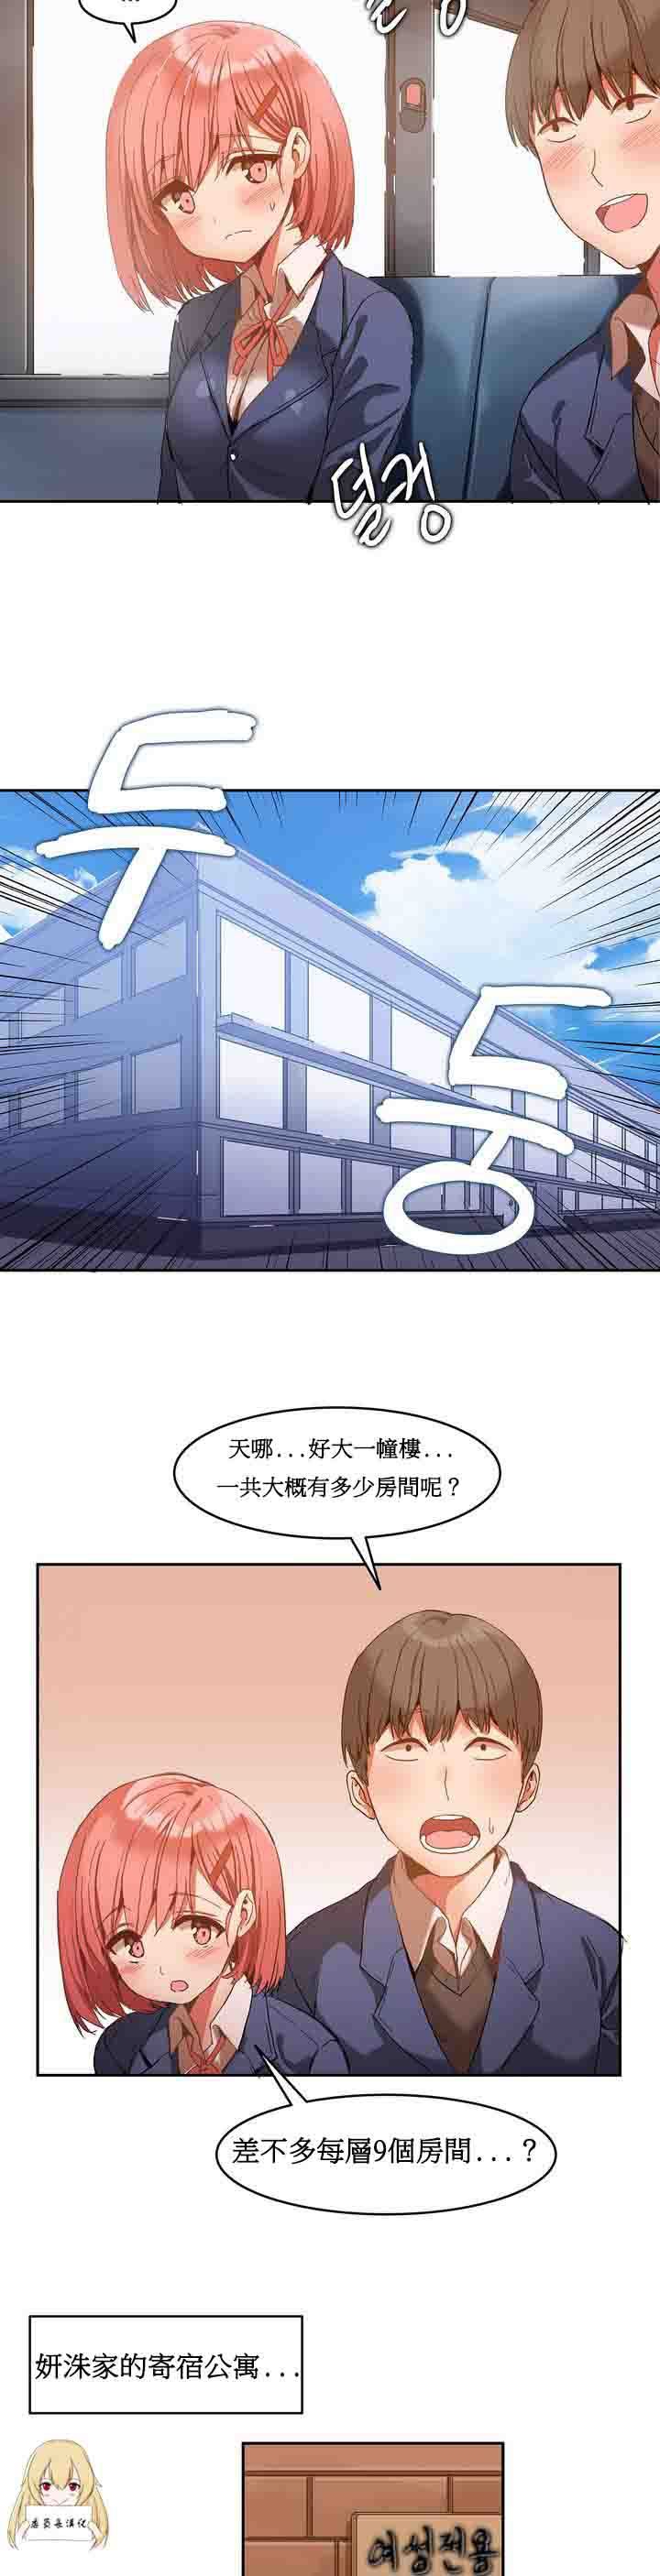 韩国污漫画 寄宿公寓-陰氣之洞 第1话 9